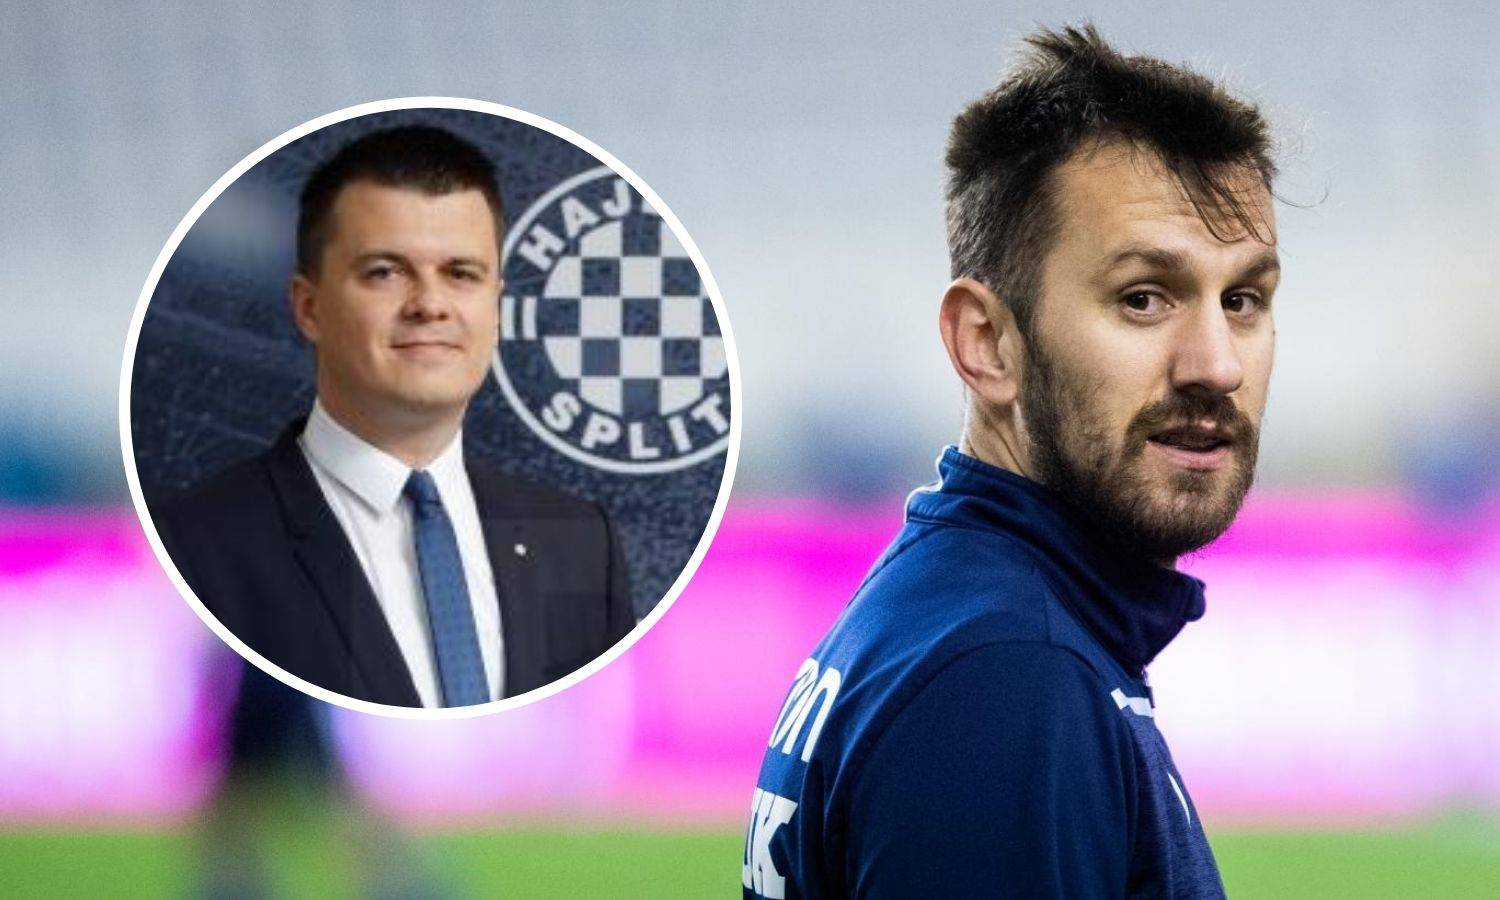 U nadmudrivanju Jakobušića i Caktaša najviše gubi - Hajduk